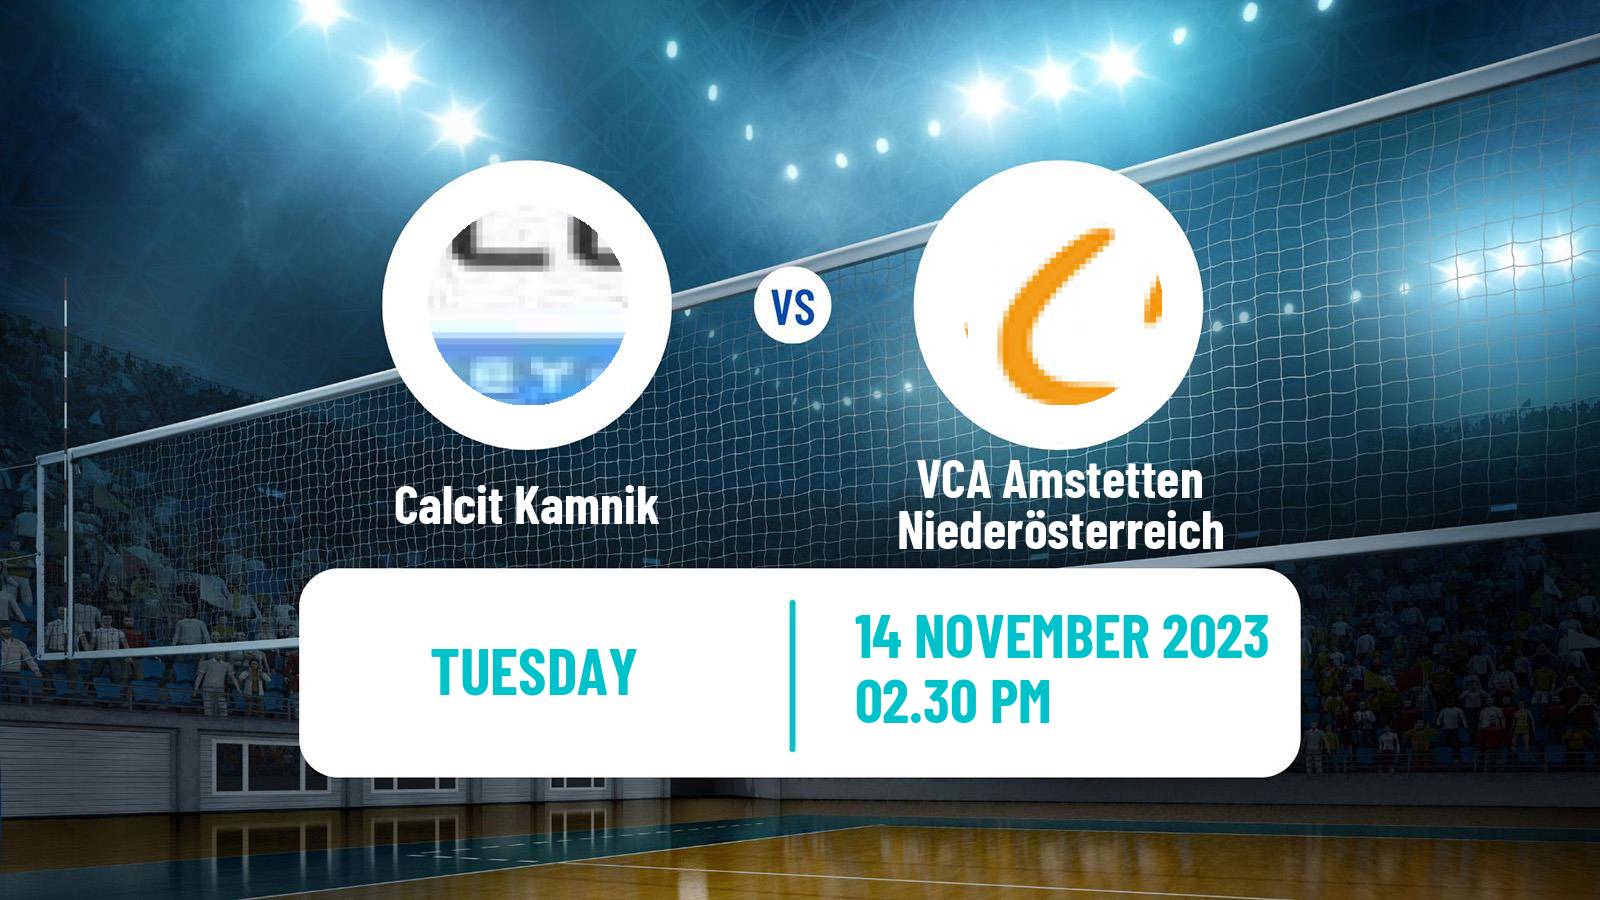 Volleyball MEVZA Calcit Kamnik - VCA Amstetten Niederösterreich